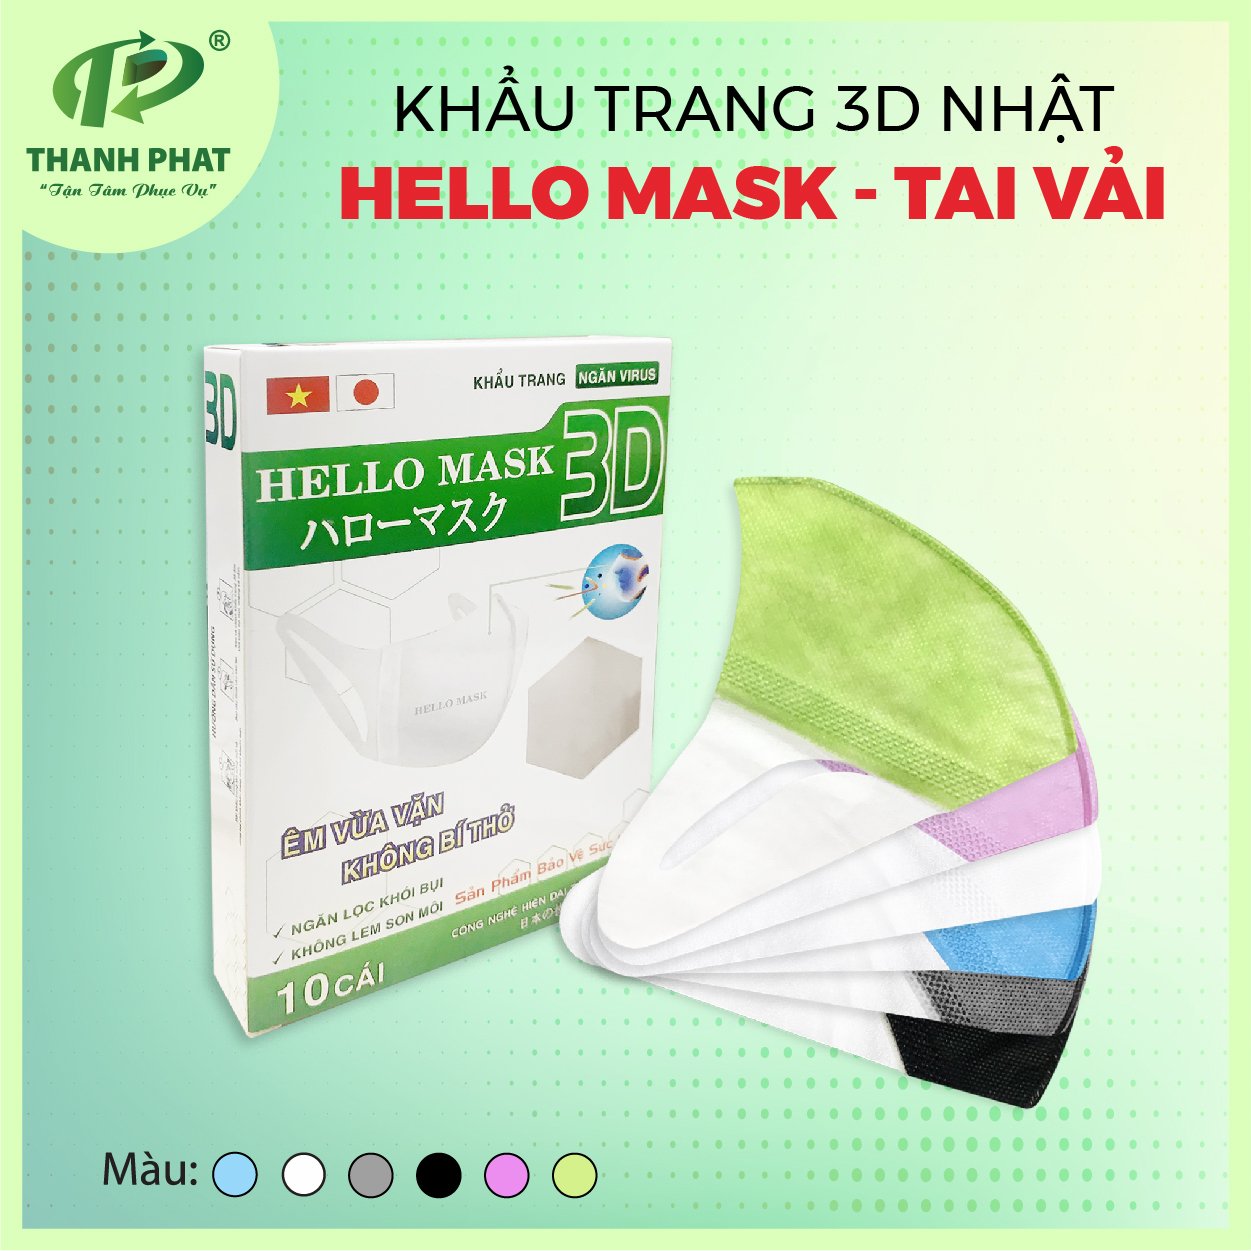 Khẩu trang 3D Hello Mask-Japan - tai vải - Khẩu Trang Y Tế Hello Mask - Vật Tư Y Tế - Công Ty TNHH Phát Triển Xuất Nhập Khẩu Thành Phát